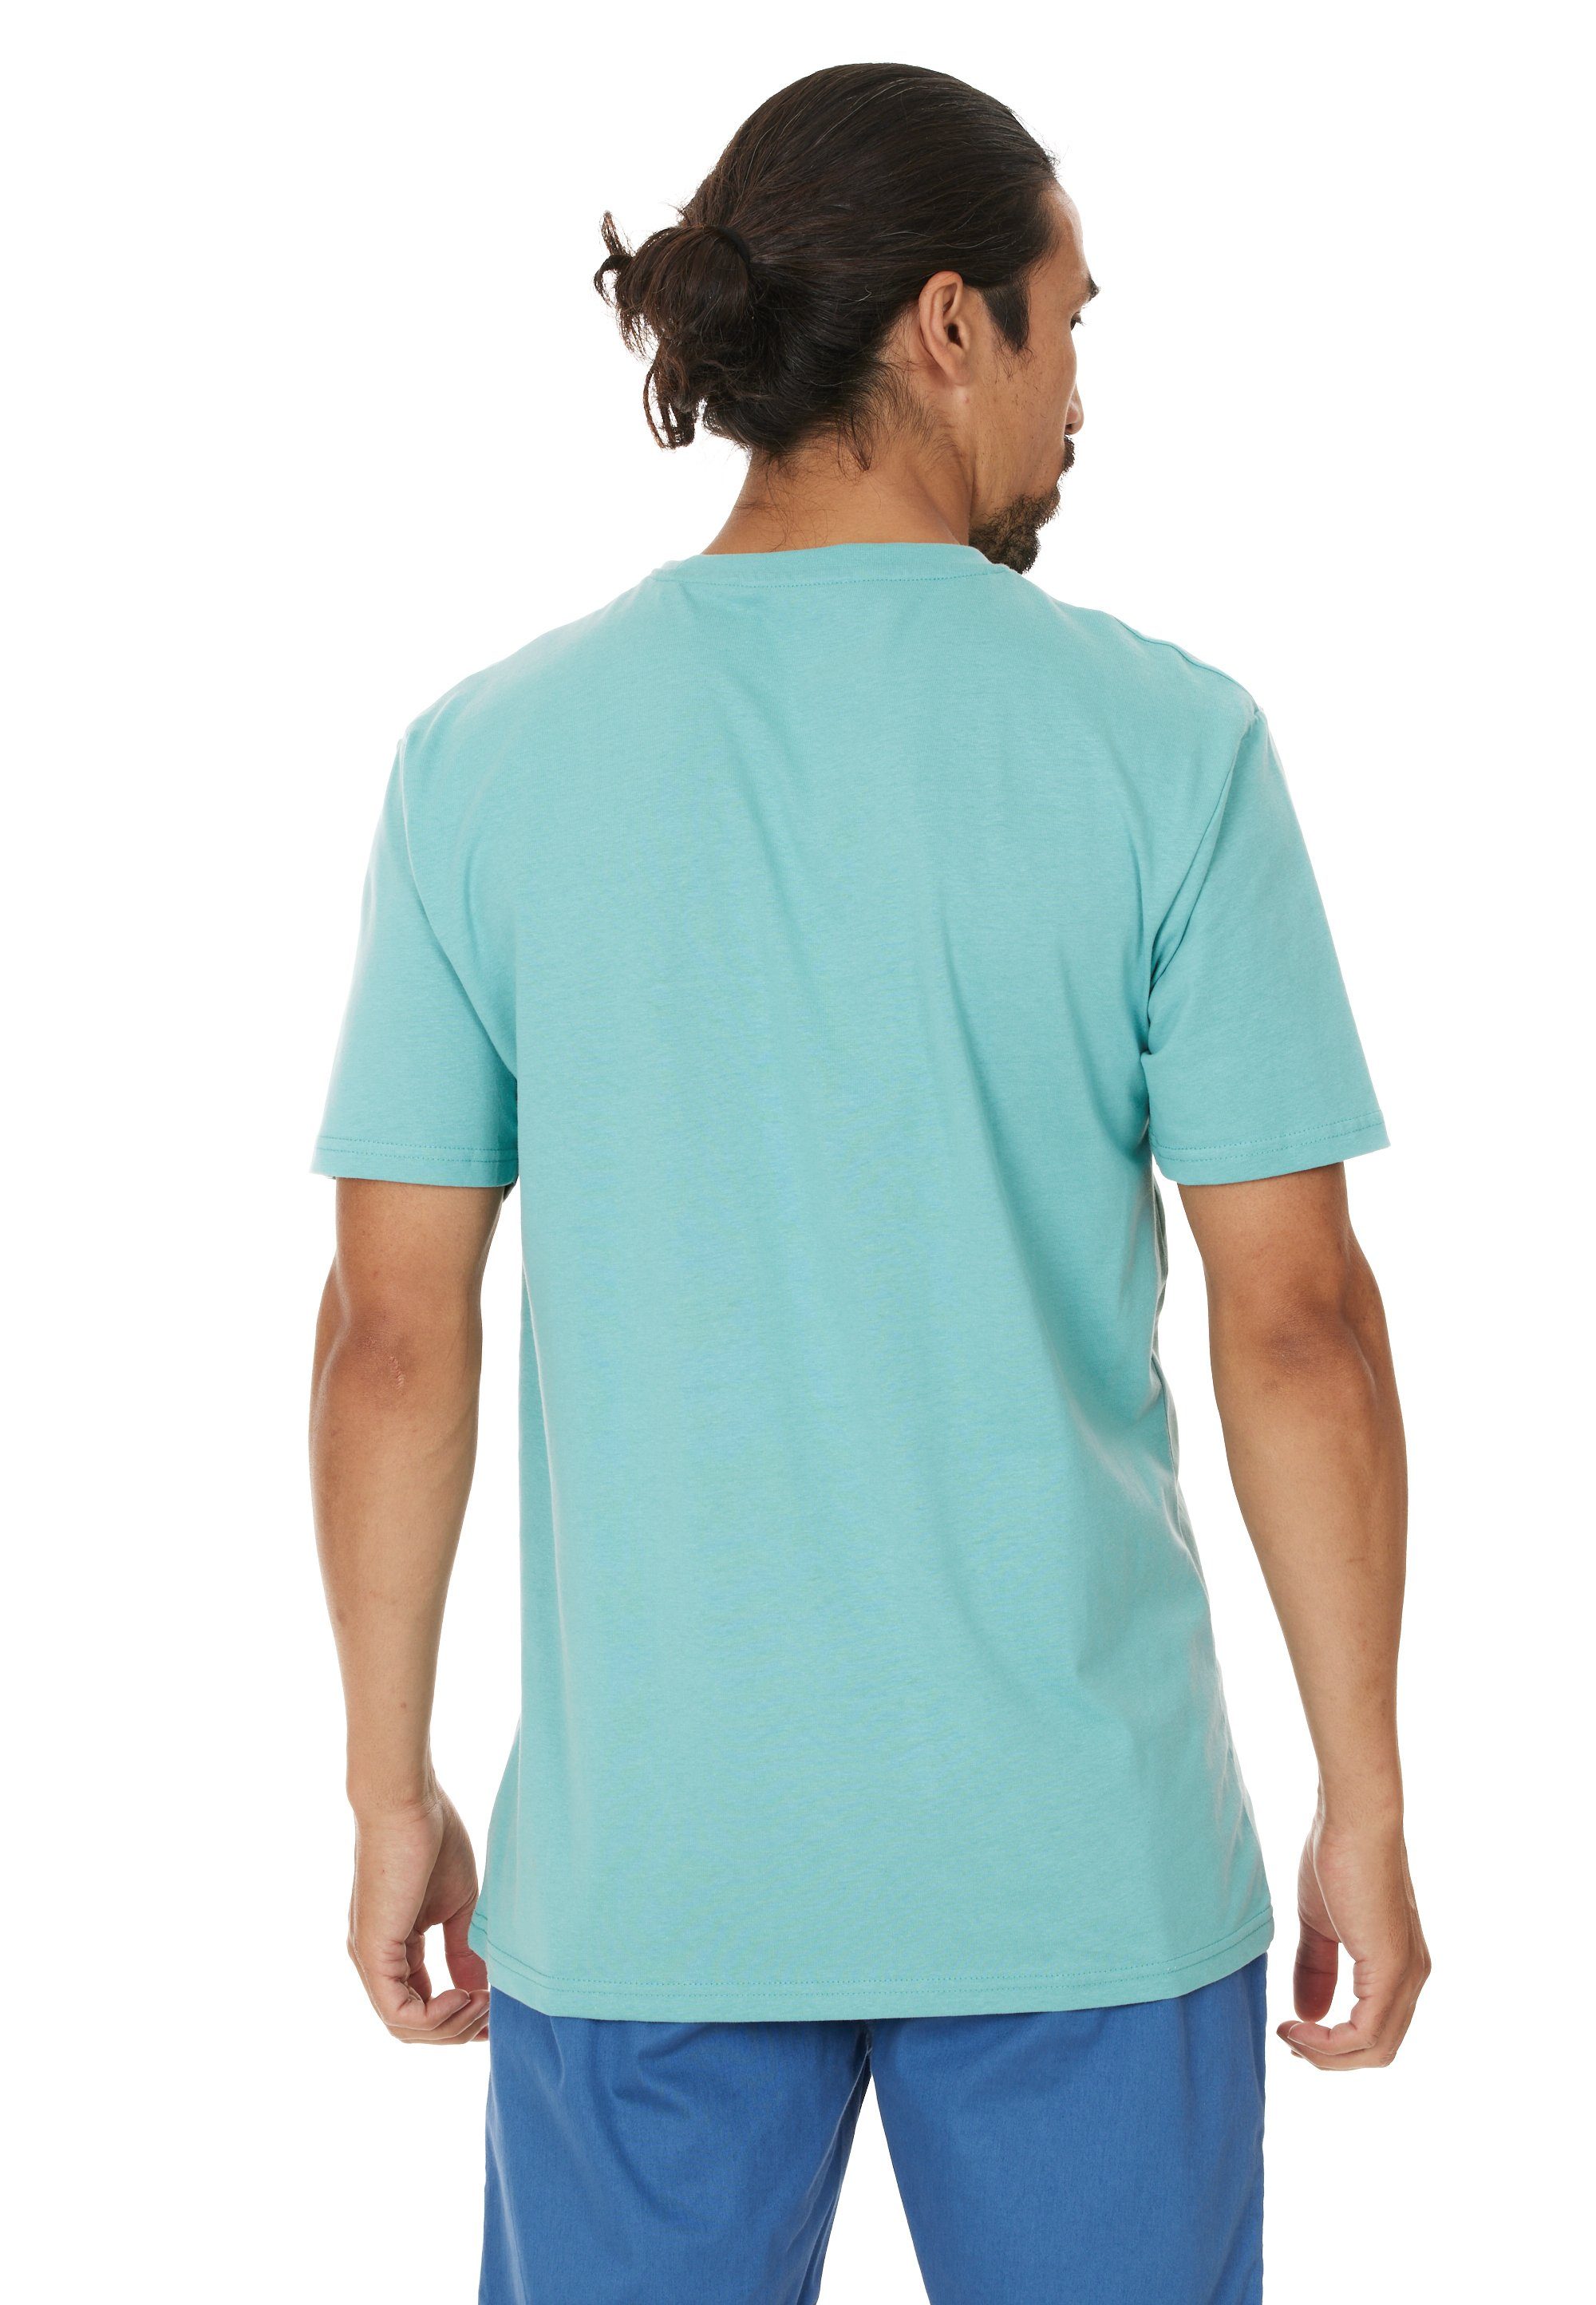 im CRUZ Qualität T-Shirt Beachlife sommerlichen atmungsaktiver Design hellblau mit